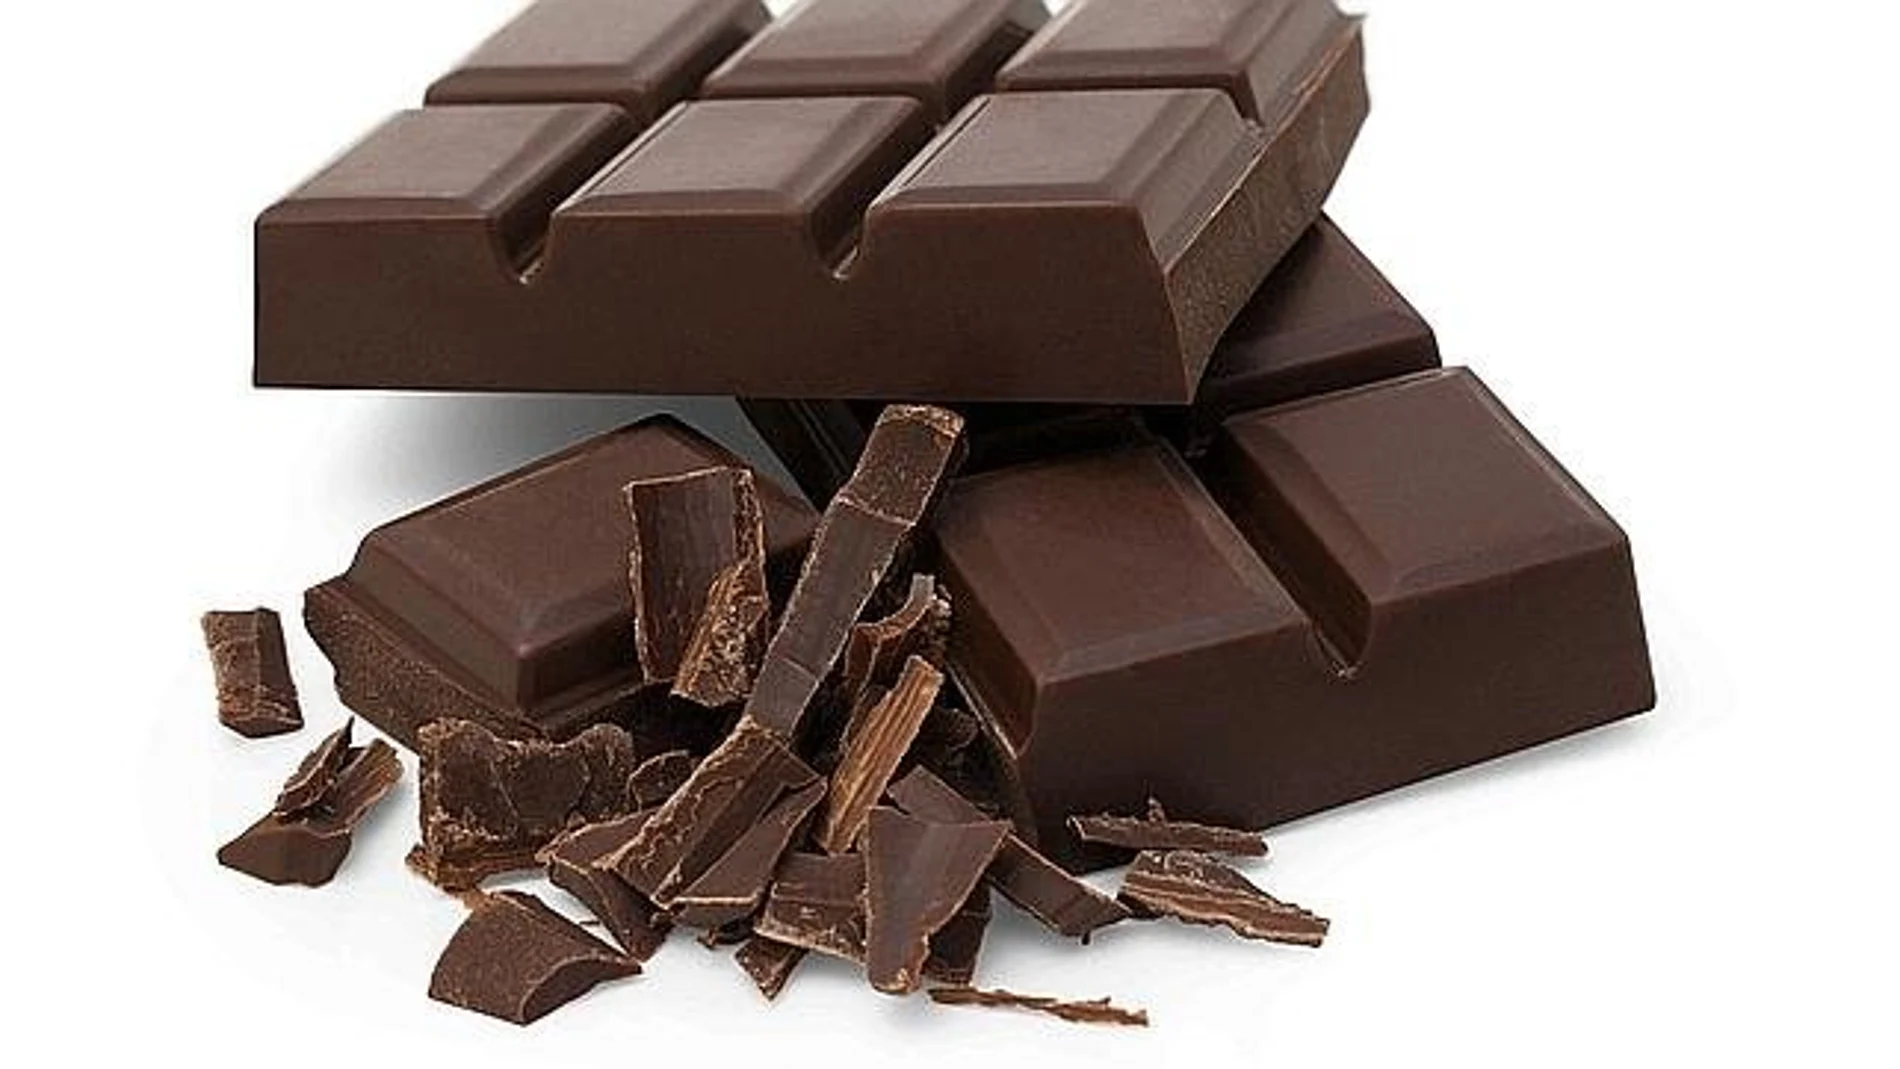 El magnesio que se encuentra en el chocolate también controla el gasto de energía